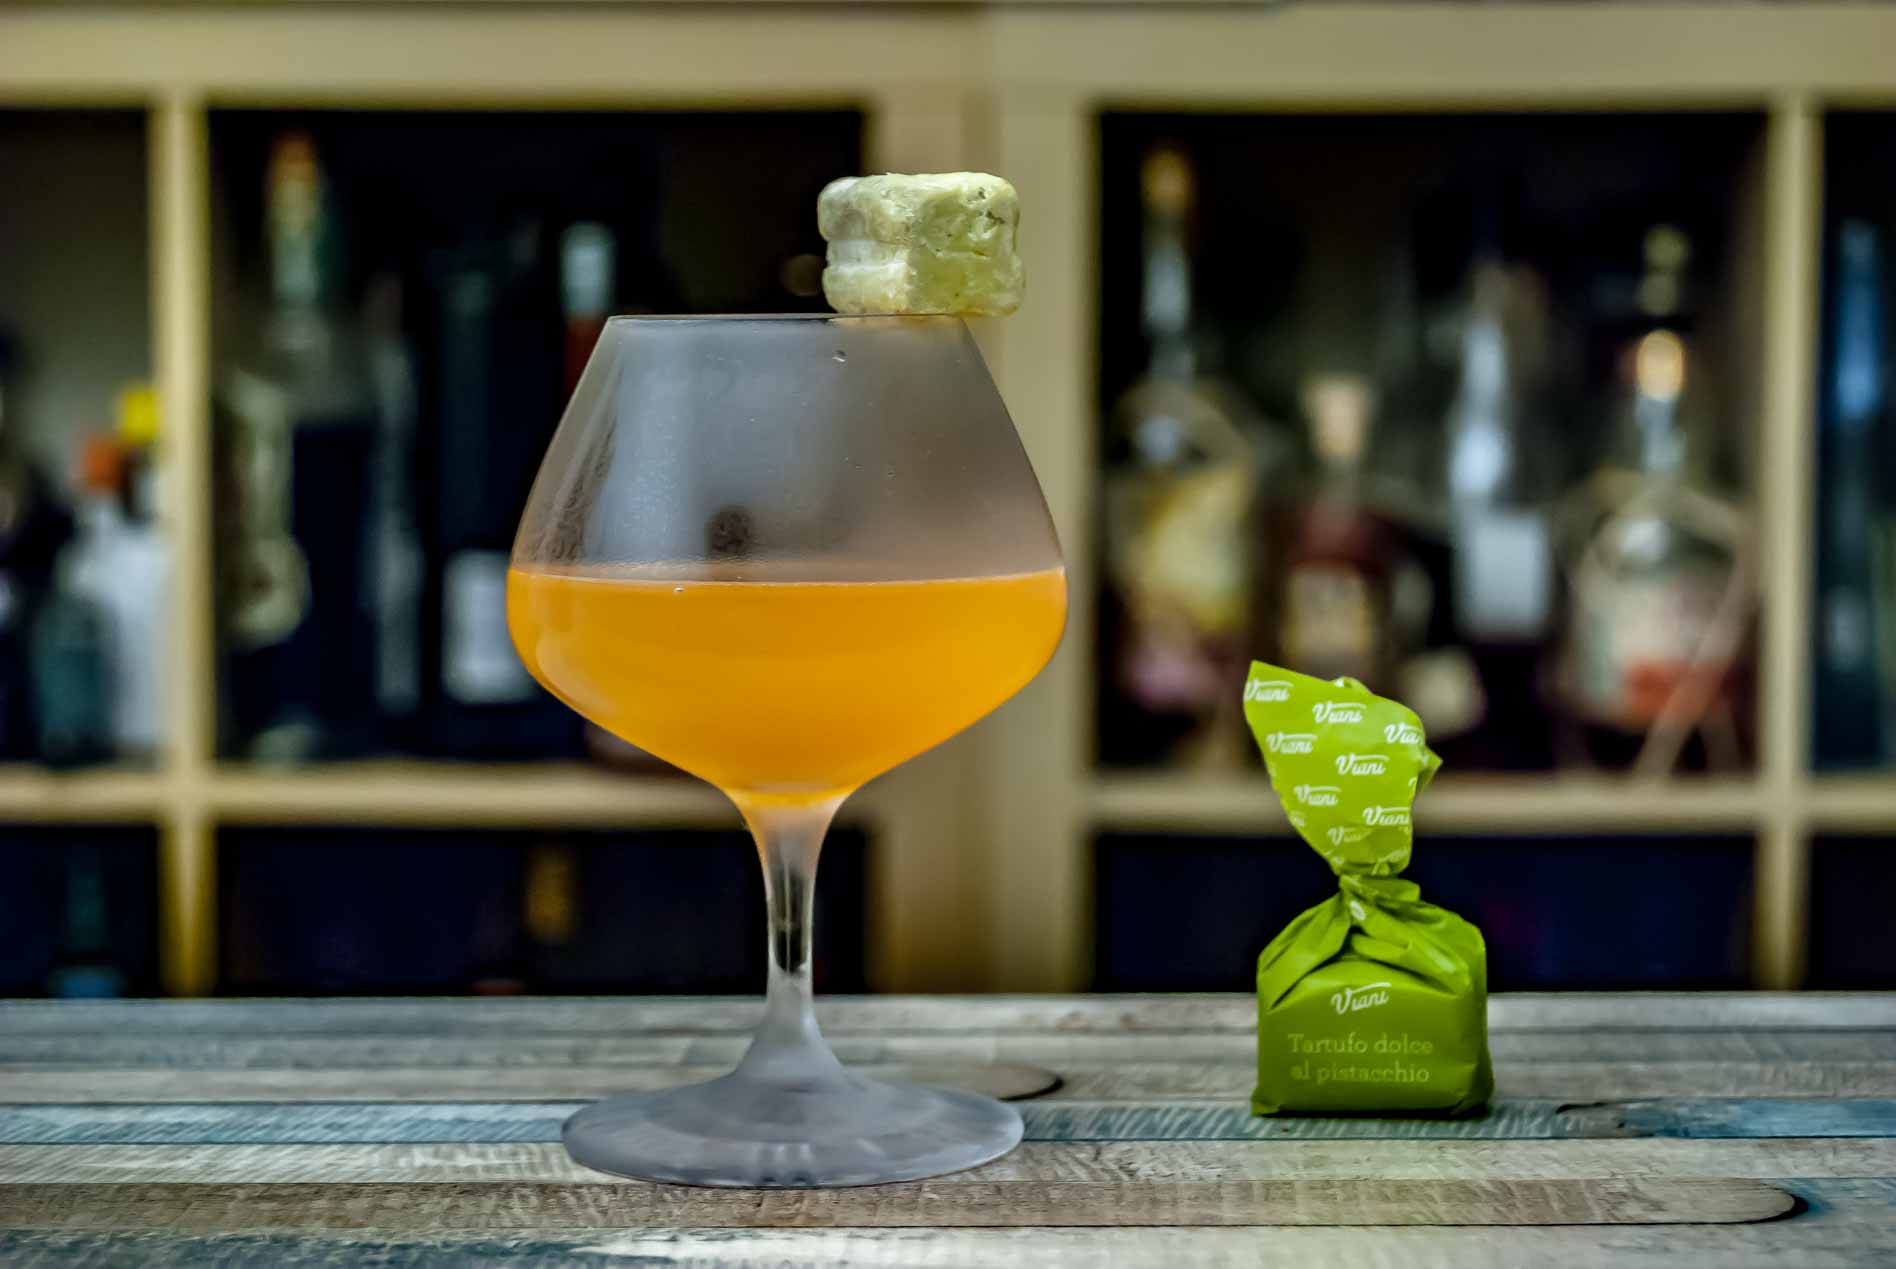 L'Actual Japanese Cocktail est servi avec un tartufo à la pistache - parce qu'il a bon goût.